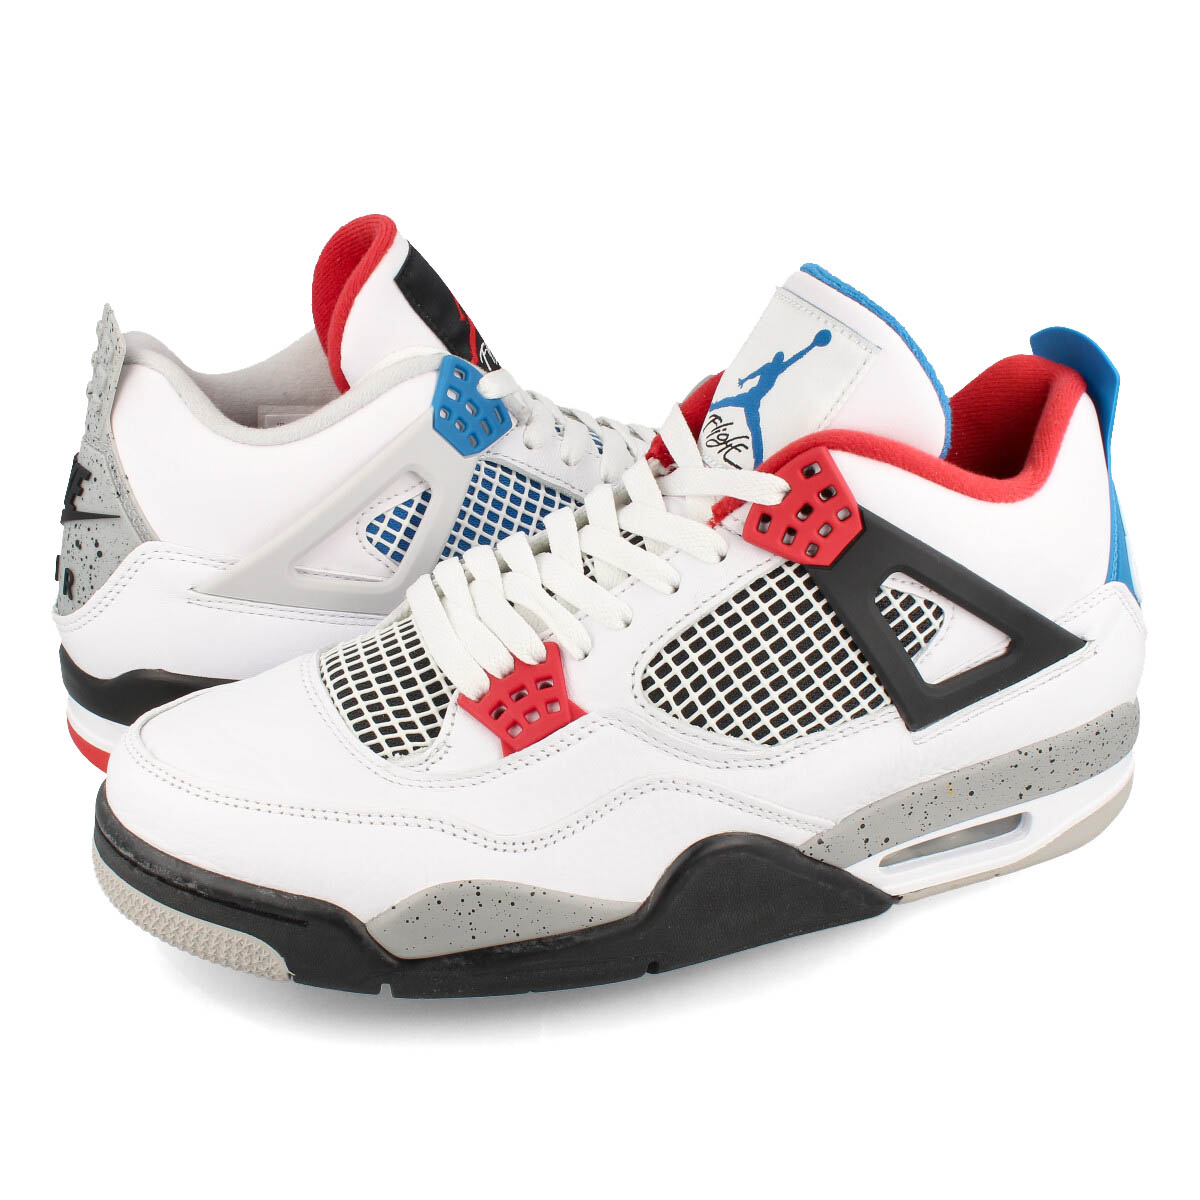 楽天市場 Nike Air Jordan 4 Retro Se What The 4 ナイキ エア ジョーダン 4 レトロ Se White Fire Red Tech Grey Military Blue Ci1184 146 Select Shop Lowtex